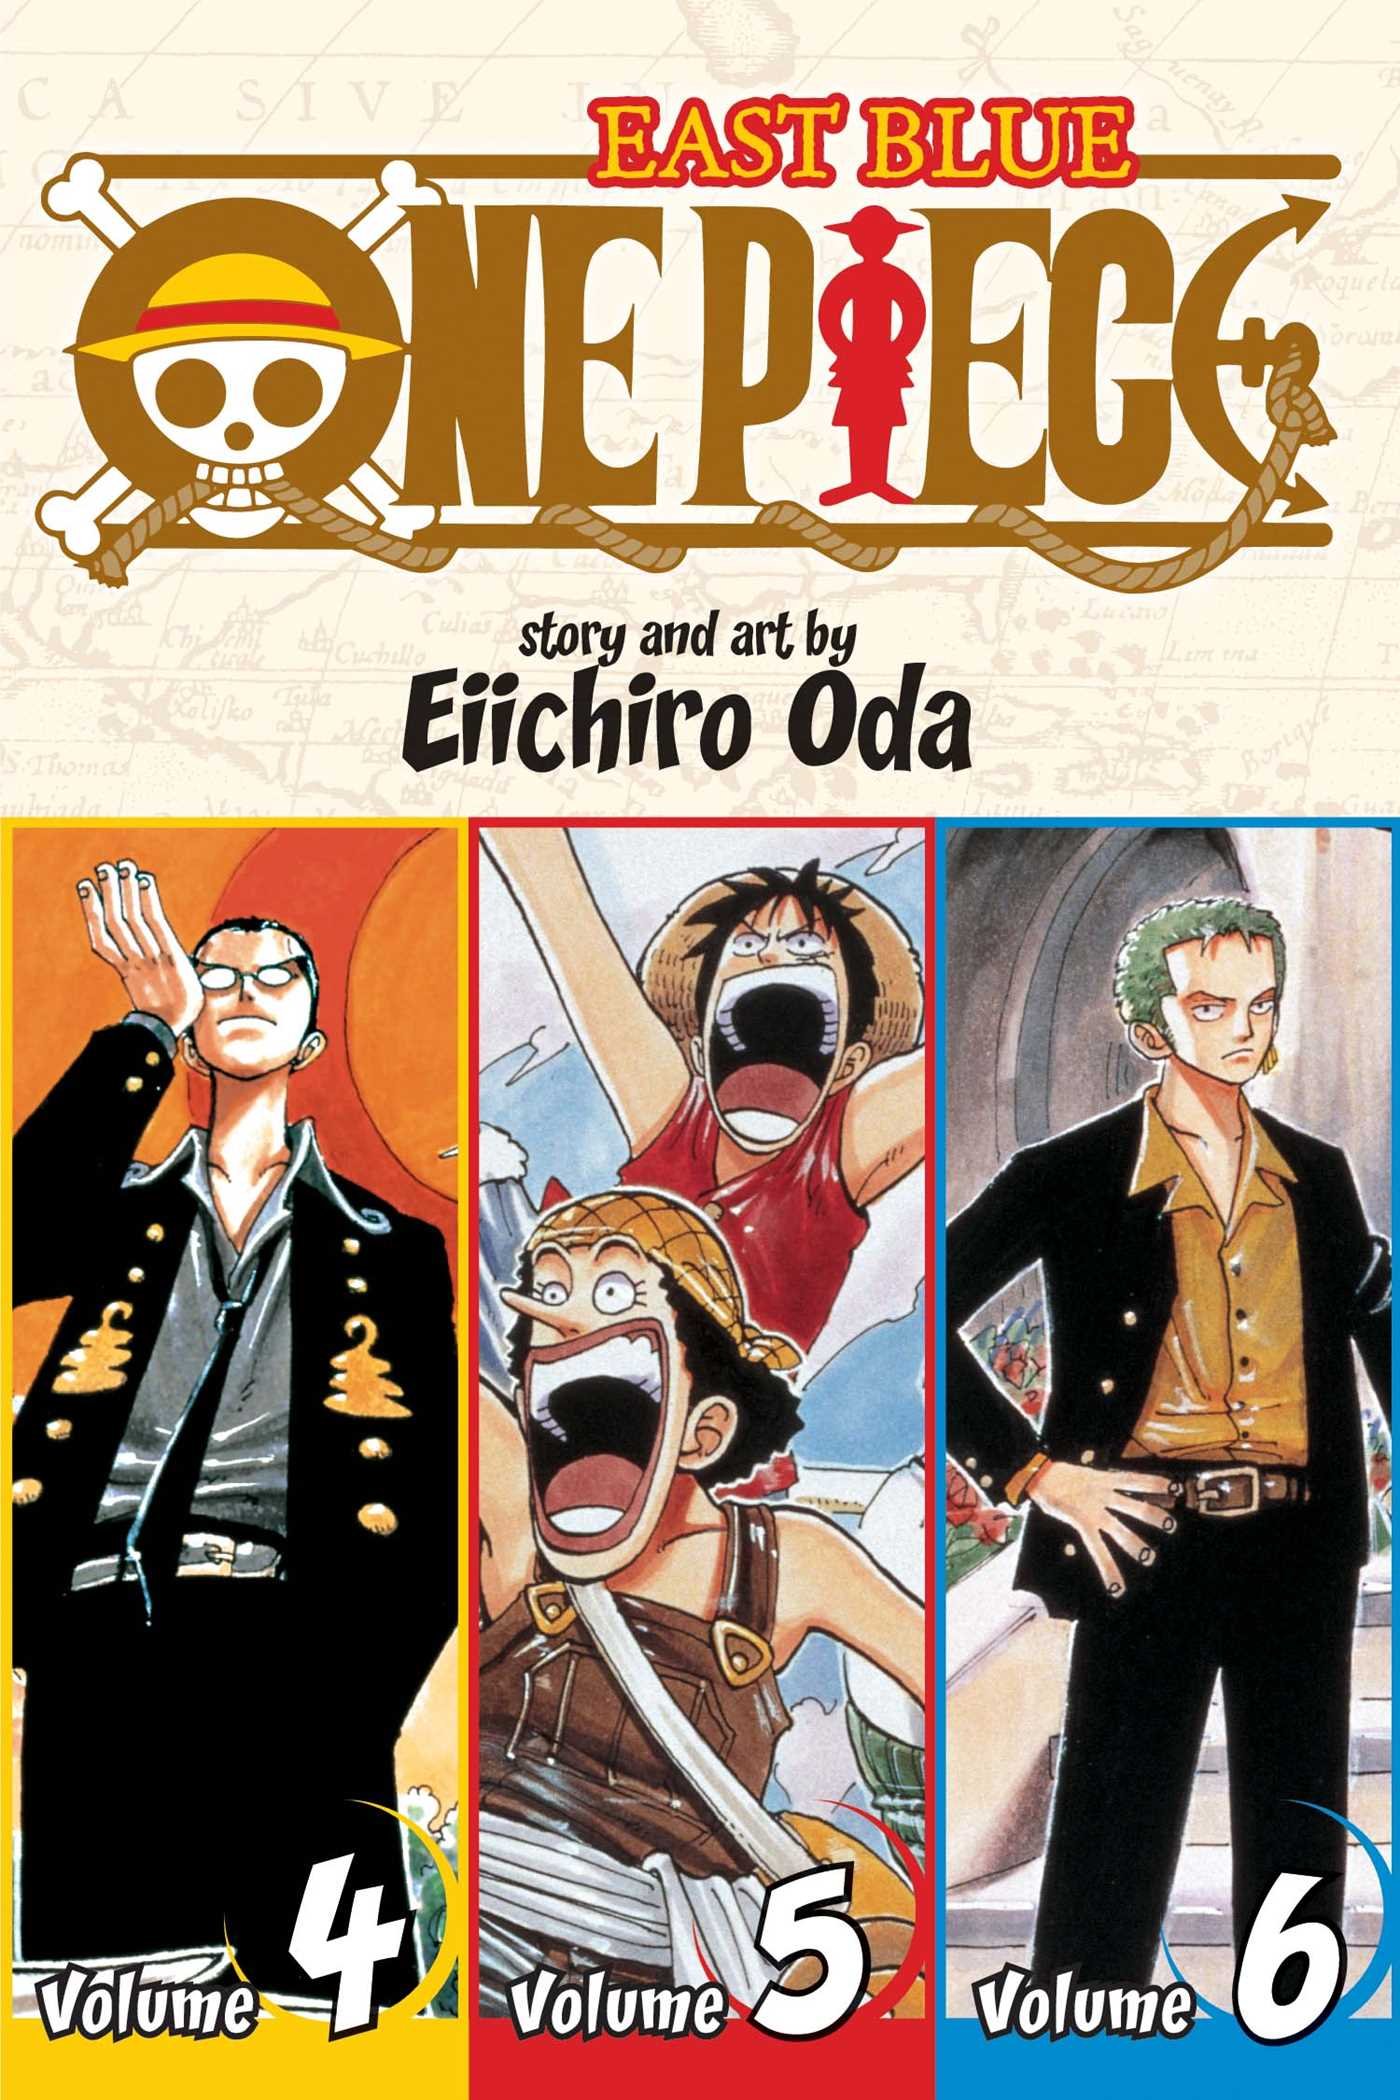 Publisher Viz Media - One Piece (Vol. 4-5-6) - Eiichiro Oda